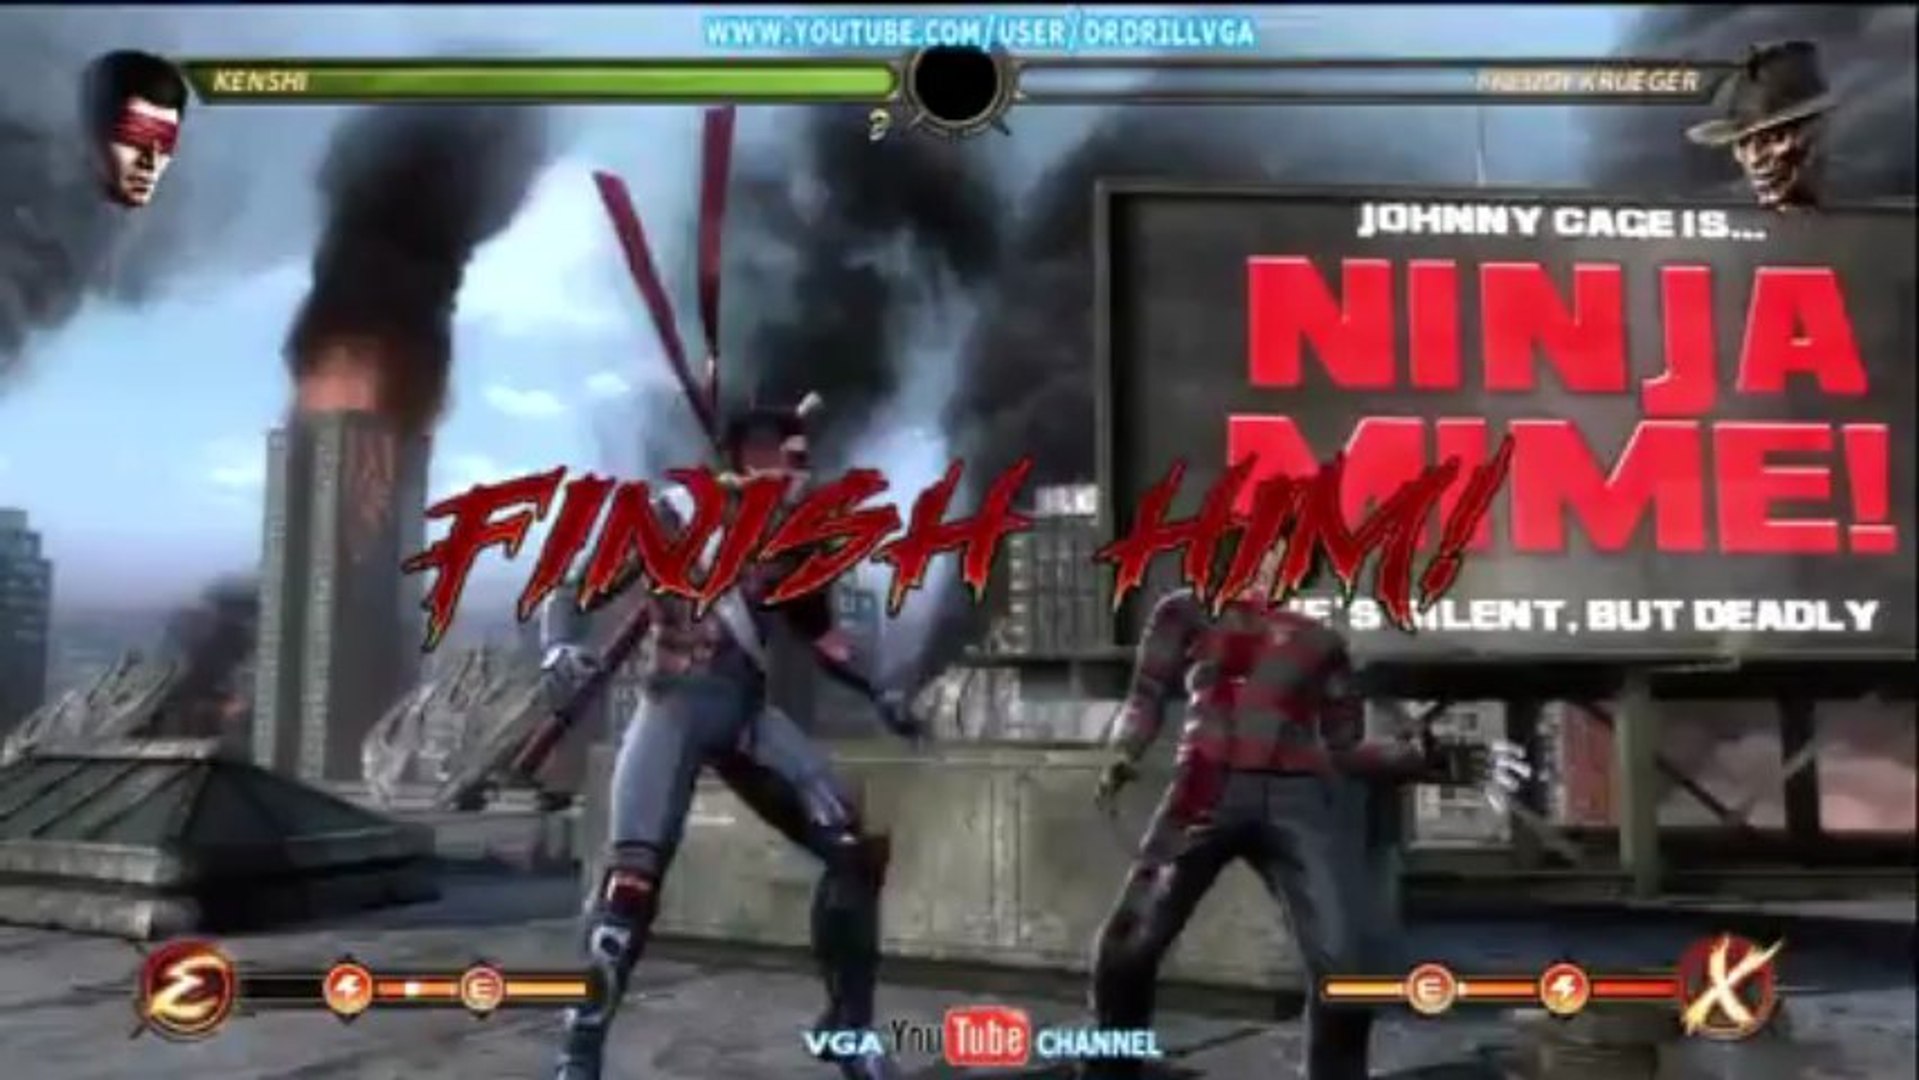 Mortal kombat 9 xbox 360, tutorial de fatality 